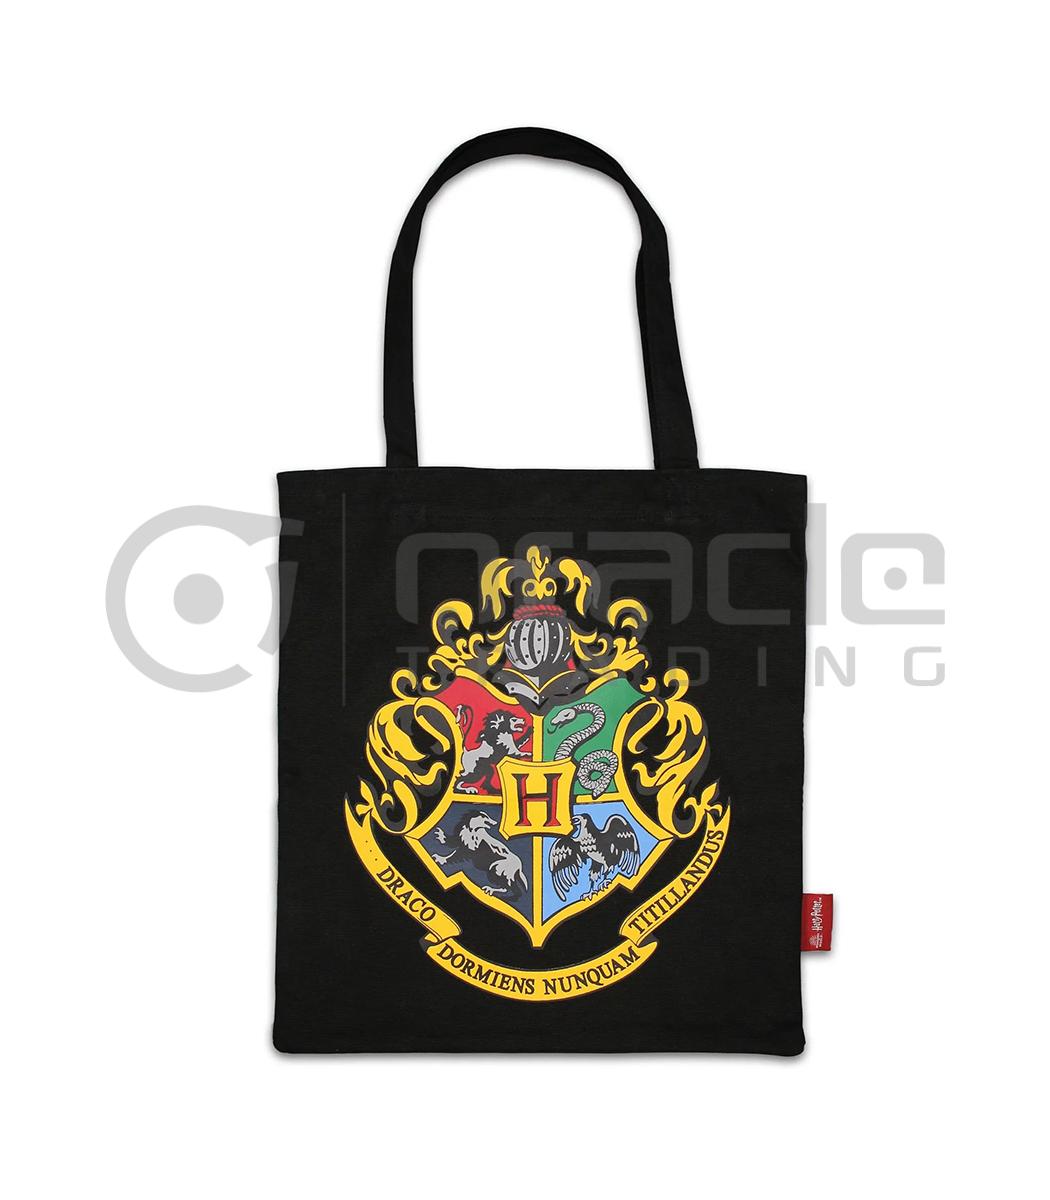 Harry Potter Tote Bag - Hogwarts (Black)